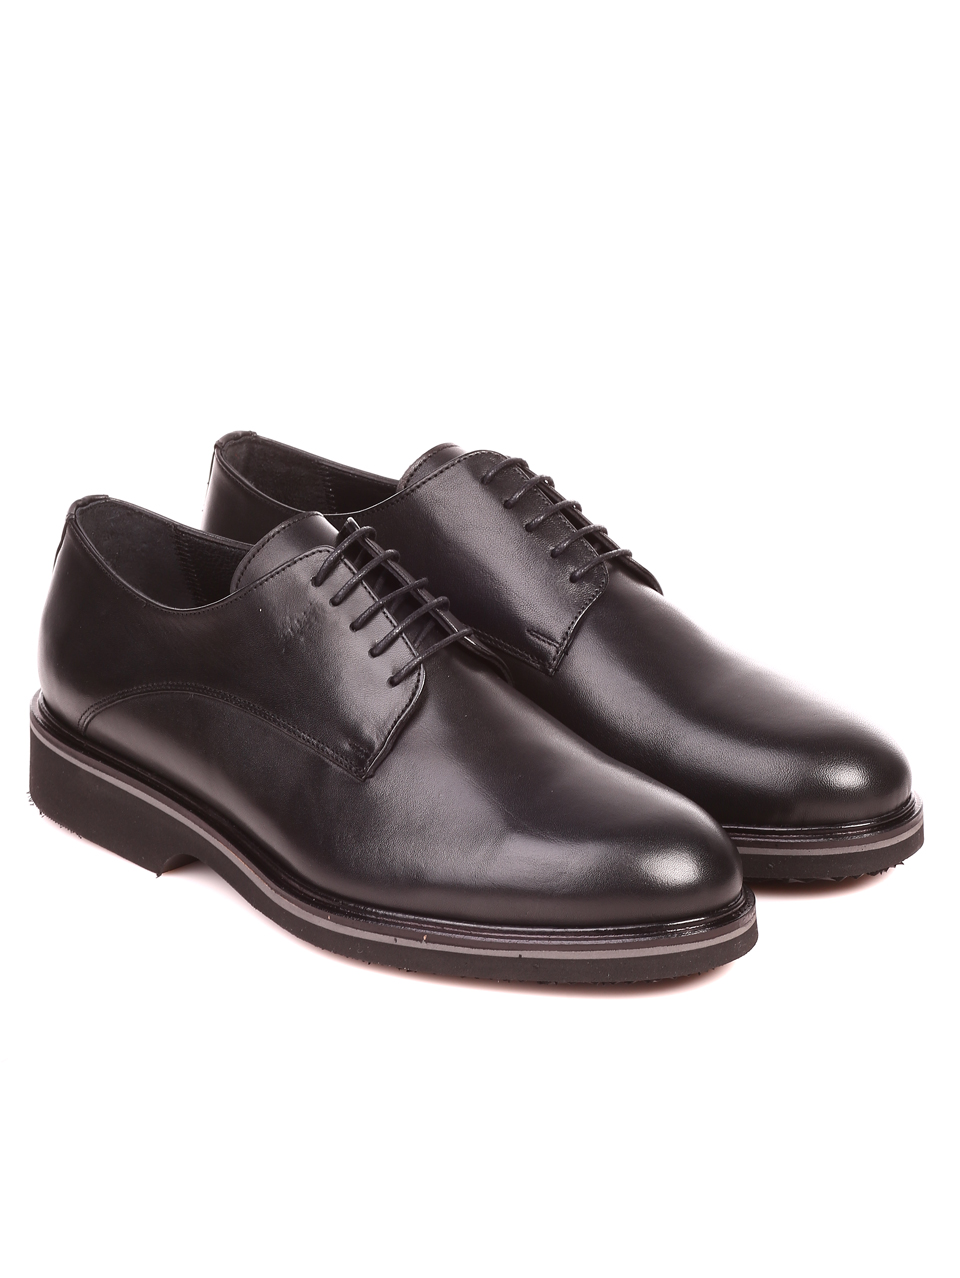 Елегантни мъжки обувки от естествена кожа 7AT-21856 black